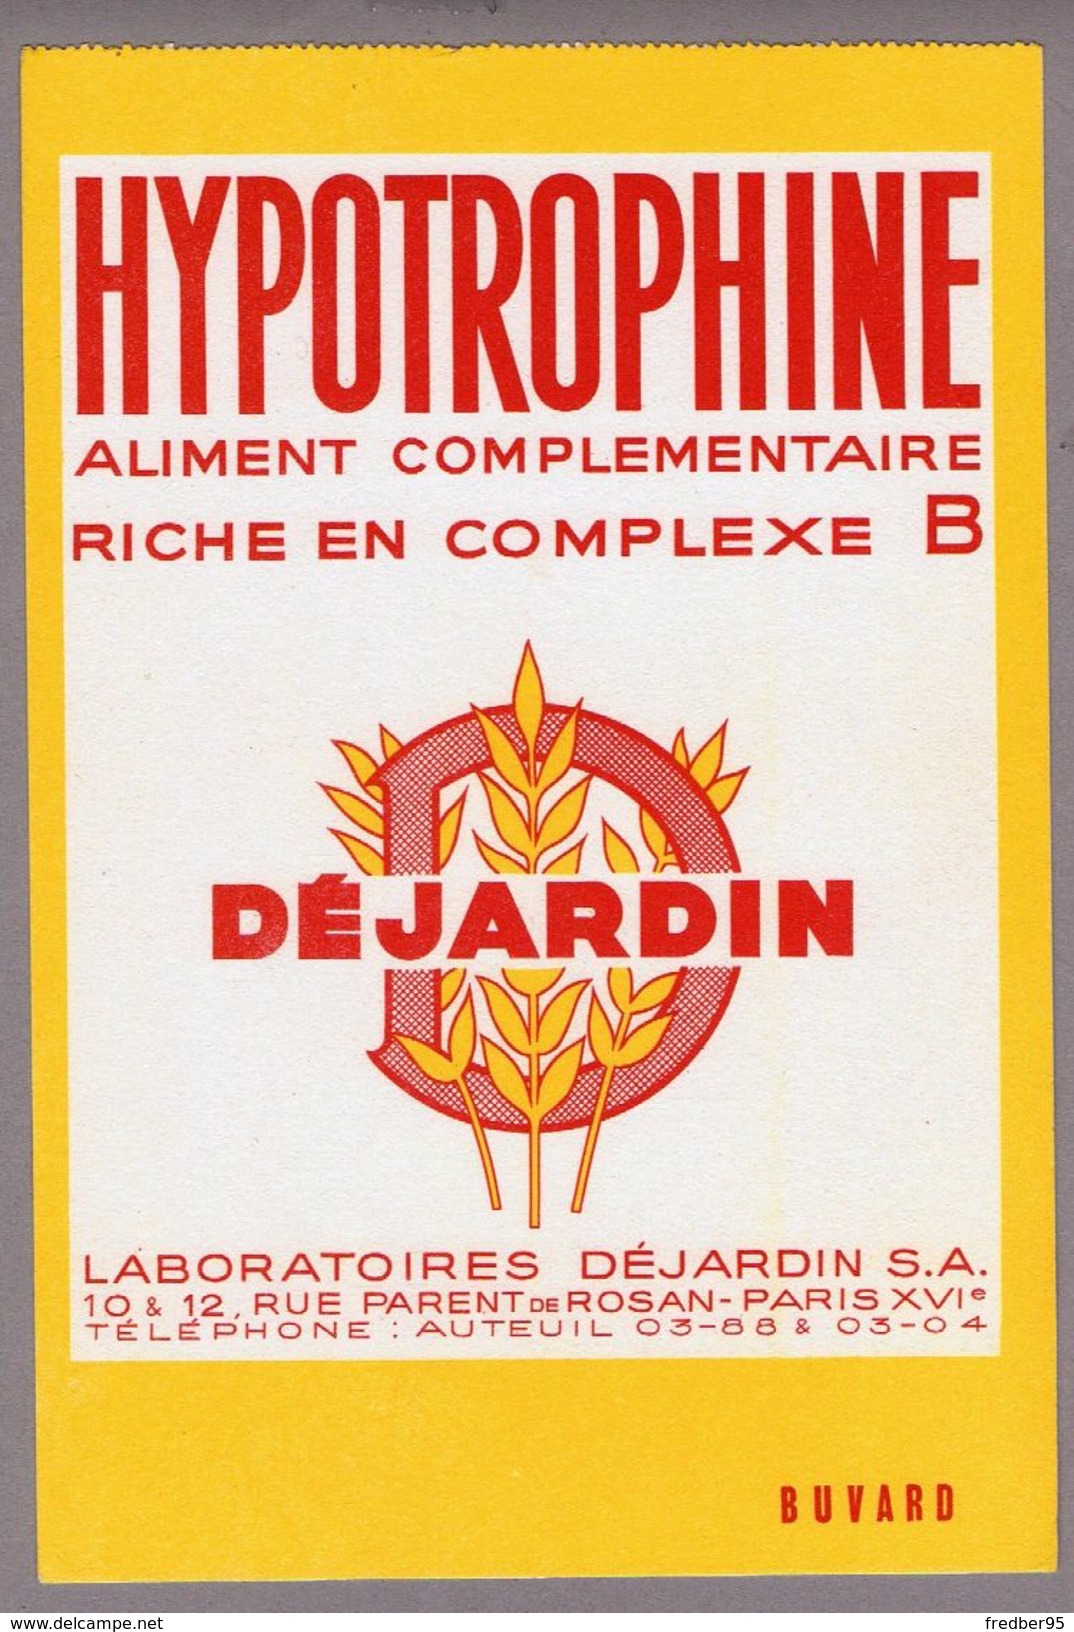 BUVARD HYPOTROPHINE ALIMENT COMPLÉMENTAIRE LABORATOIRE DEJARDIN PARIS XVIe - Produits Pharmaceutiques